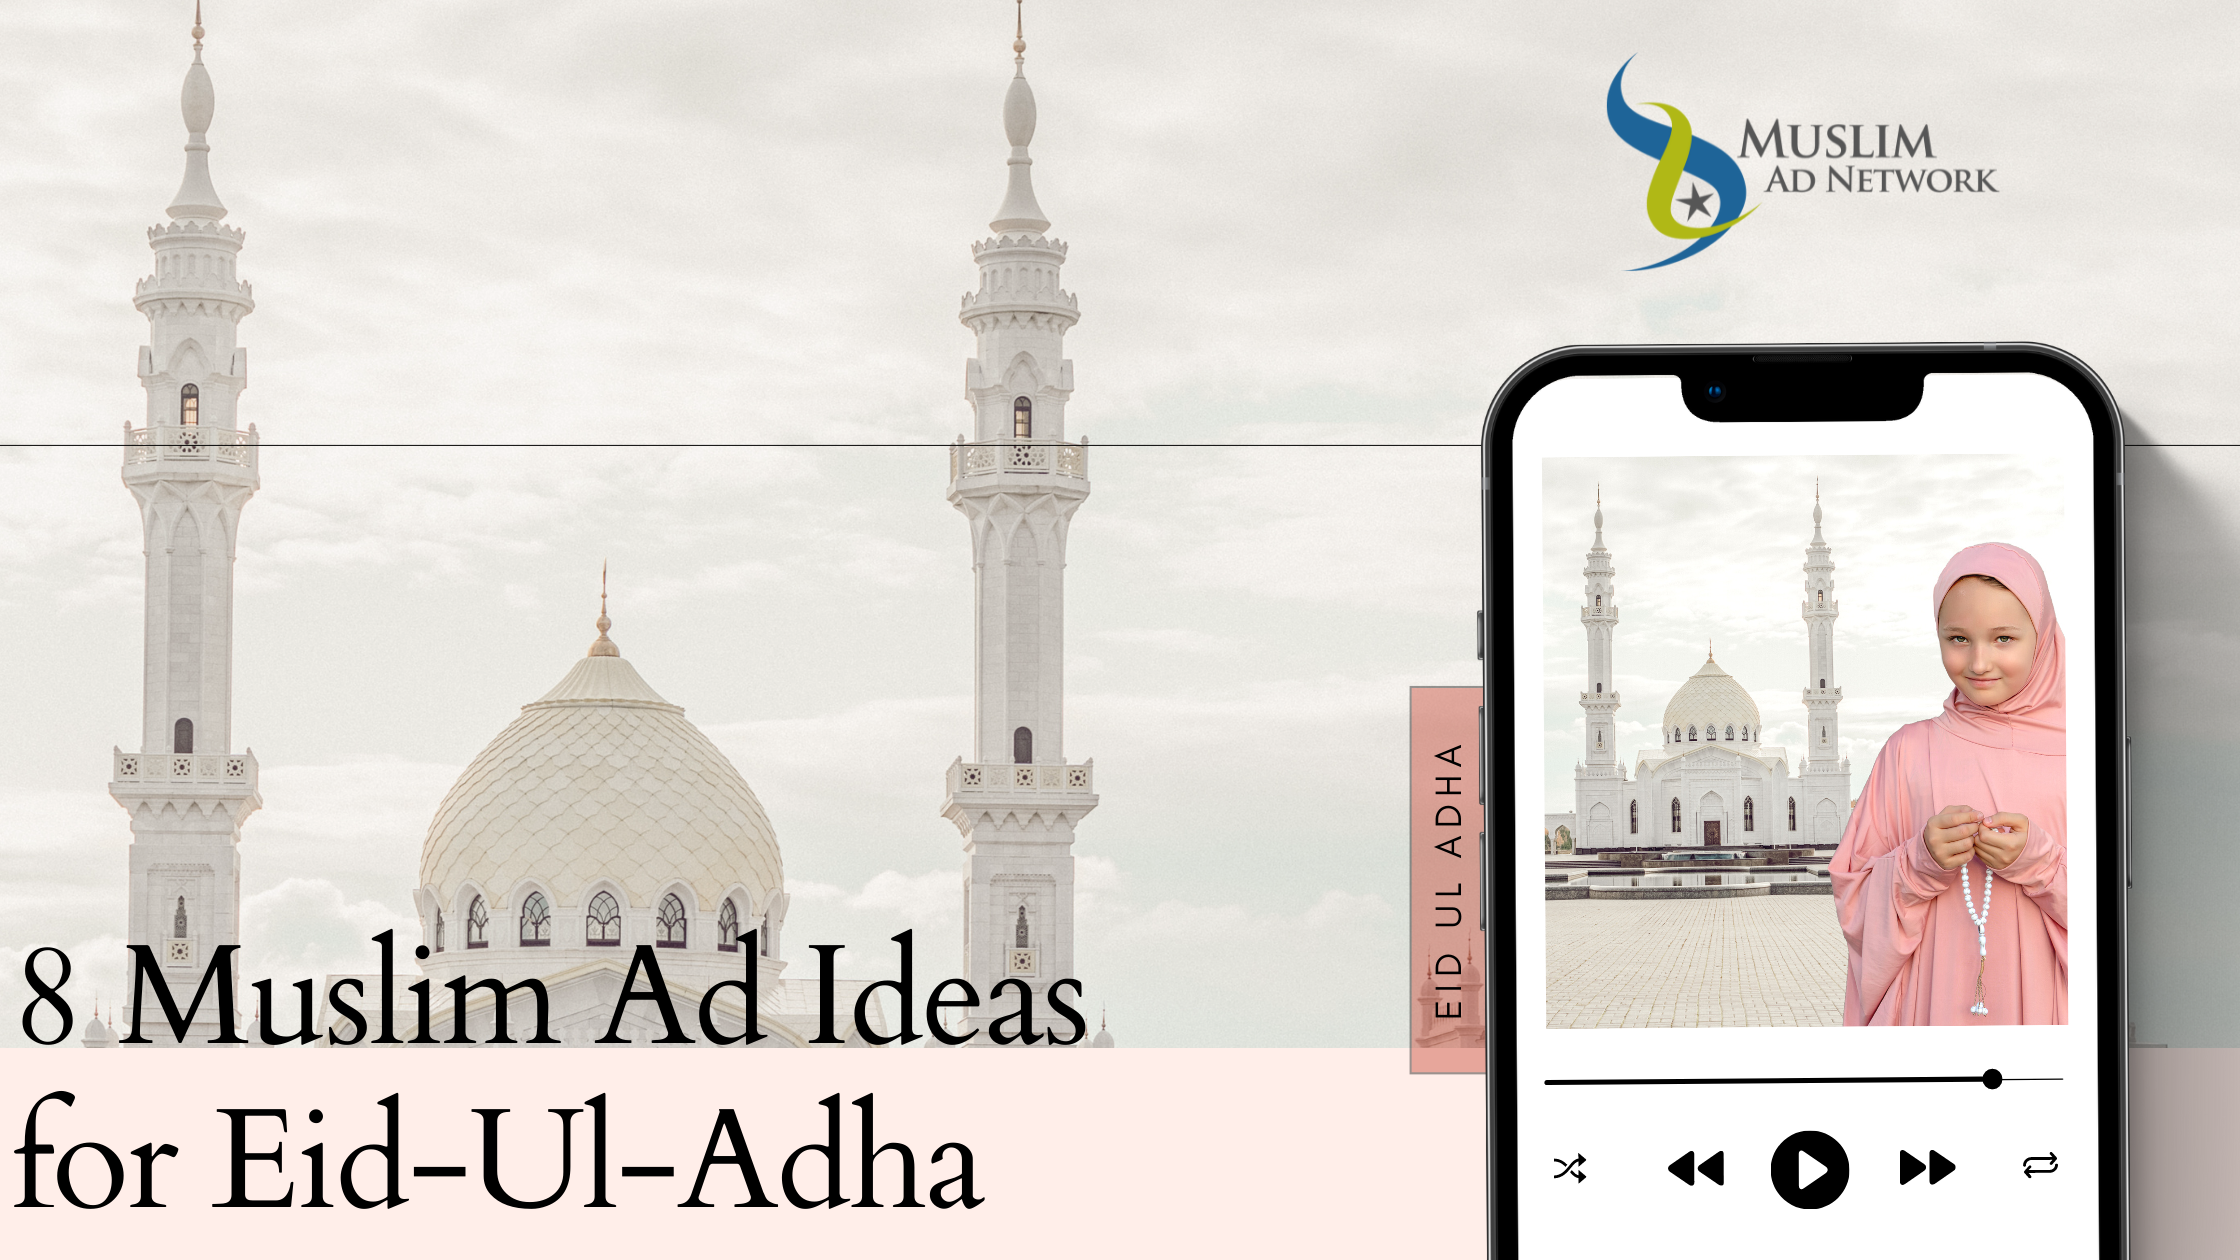 Ad Ideas for Eid-Ul-Adha